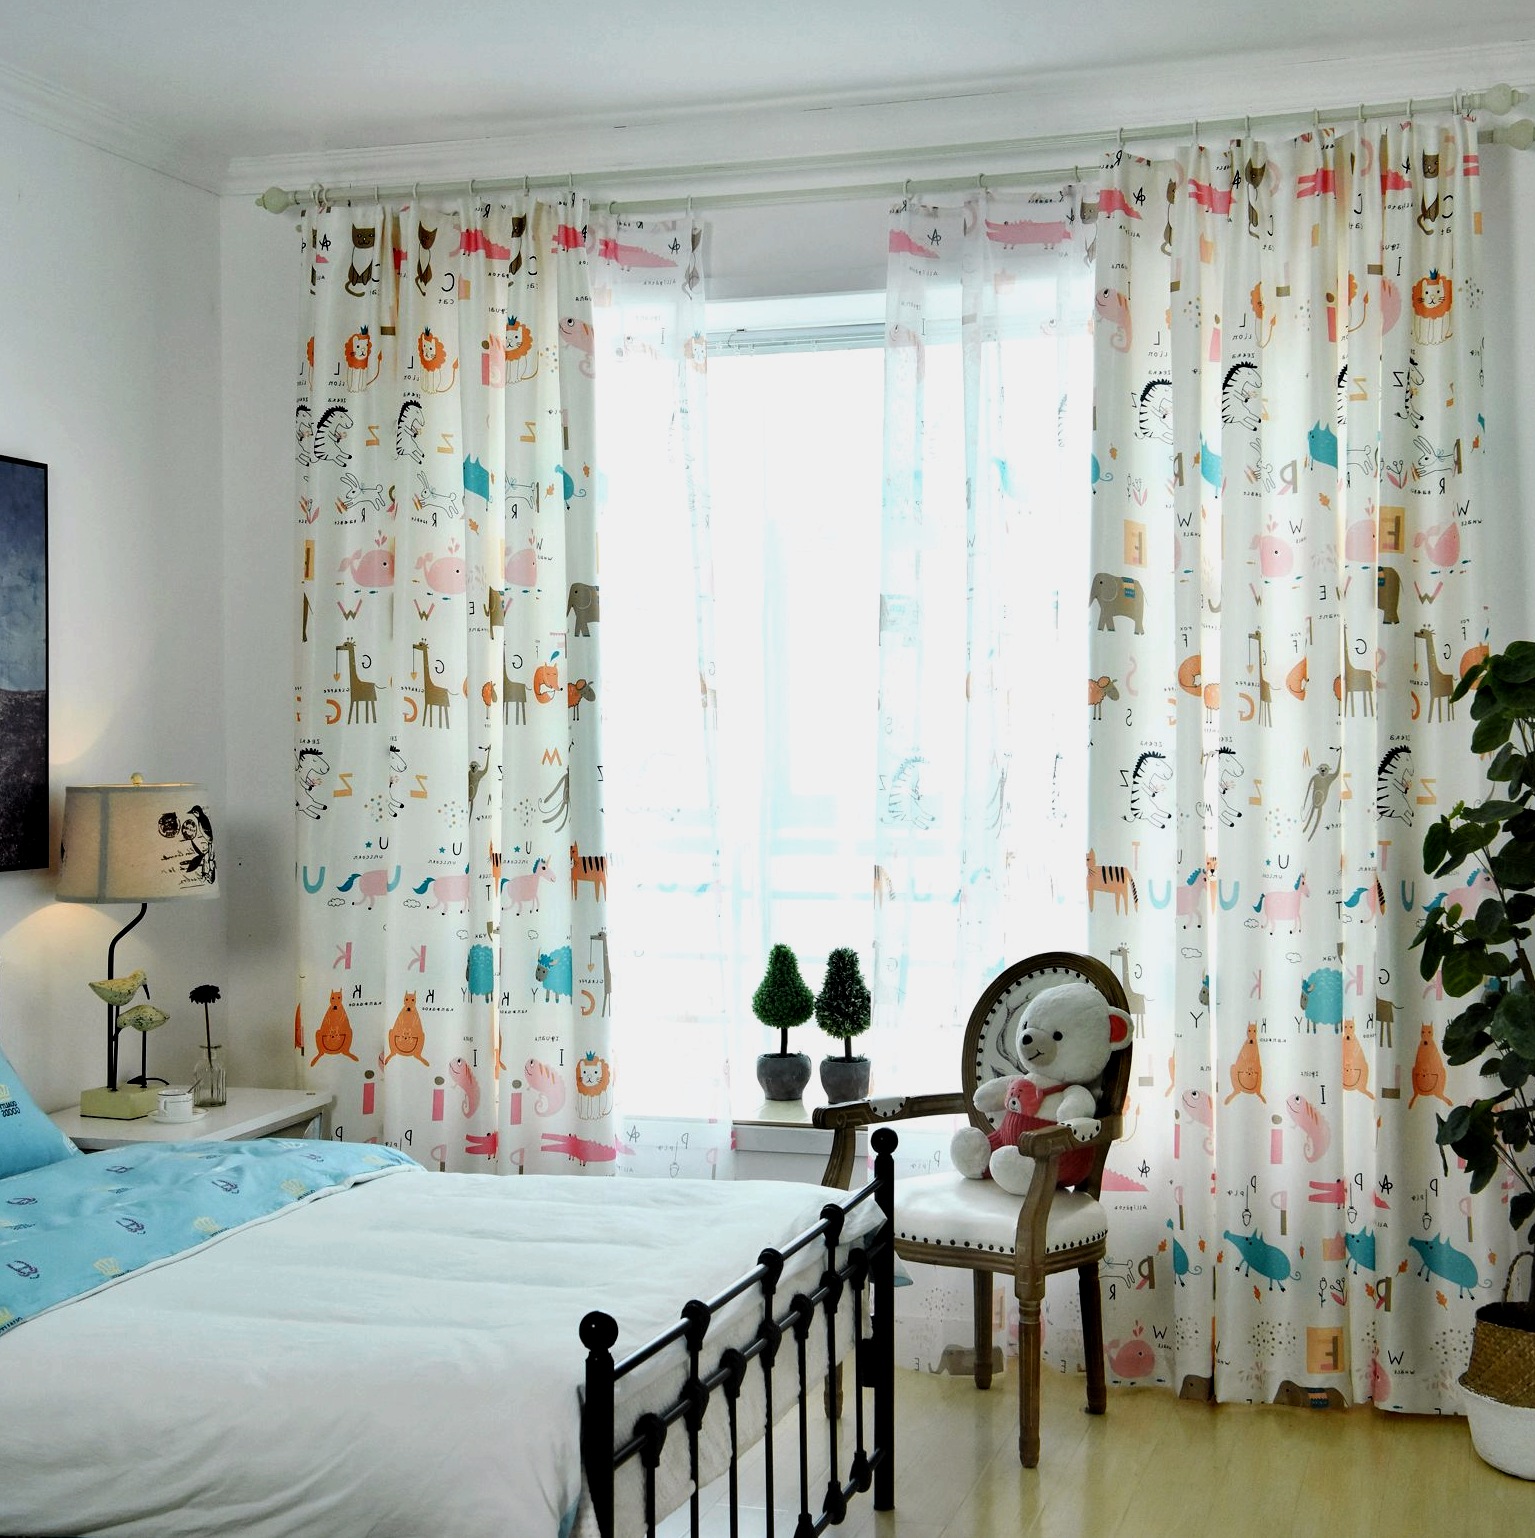 Modelos de cortinas para el dormitorio: las ideas fotográficas más seleccionadas.